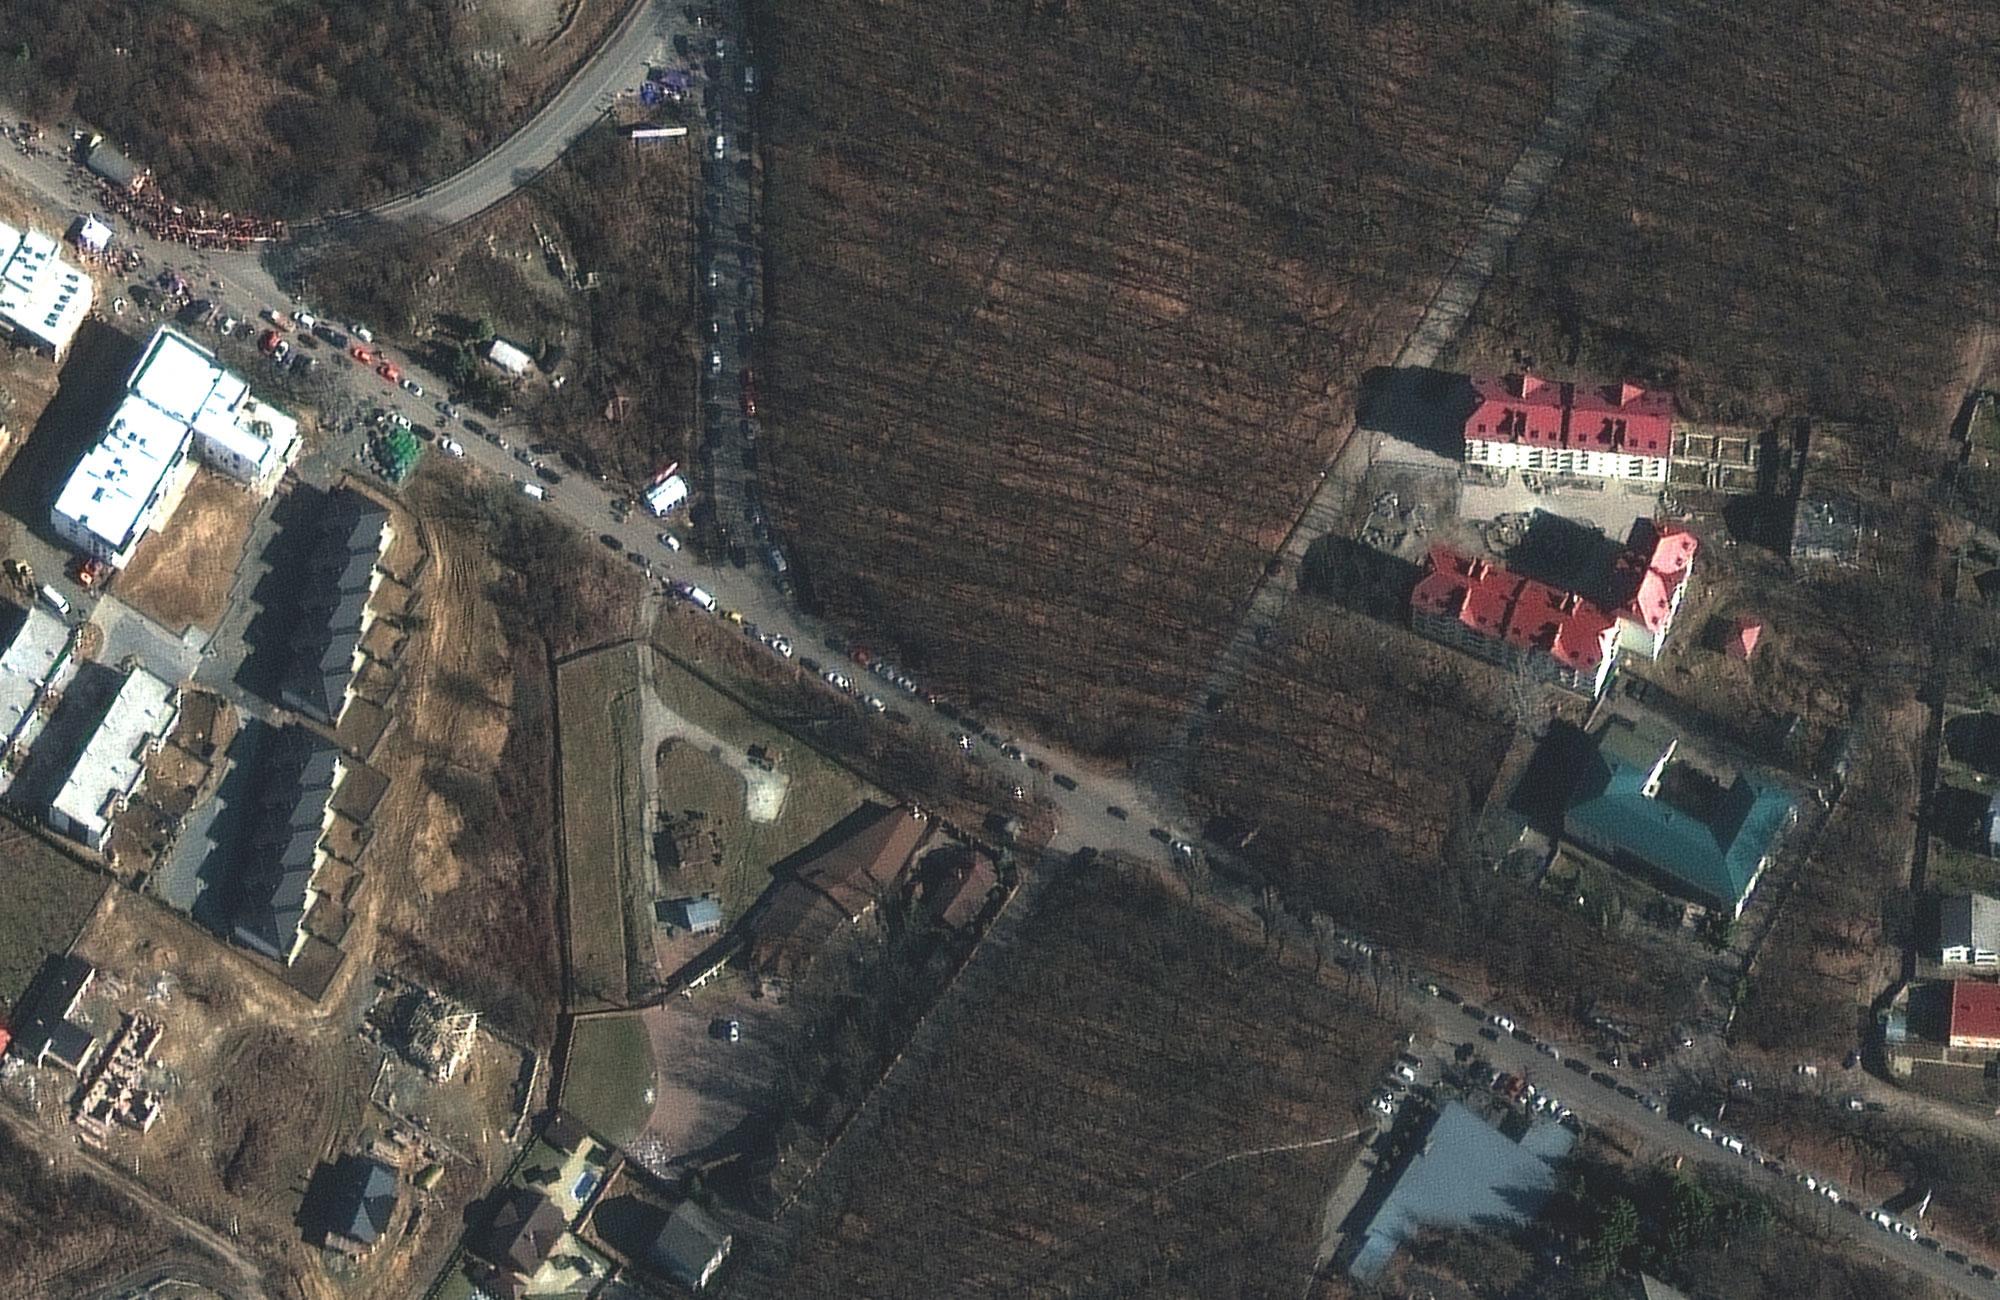 Comment les images satellites privées façonnent le conflit ukrainien